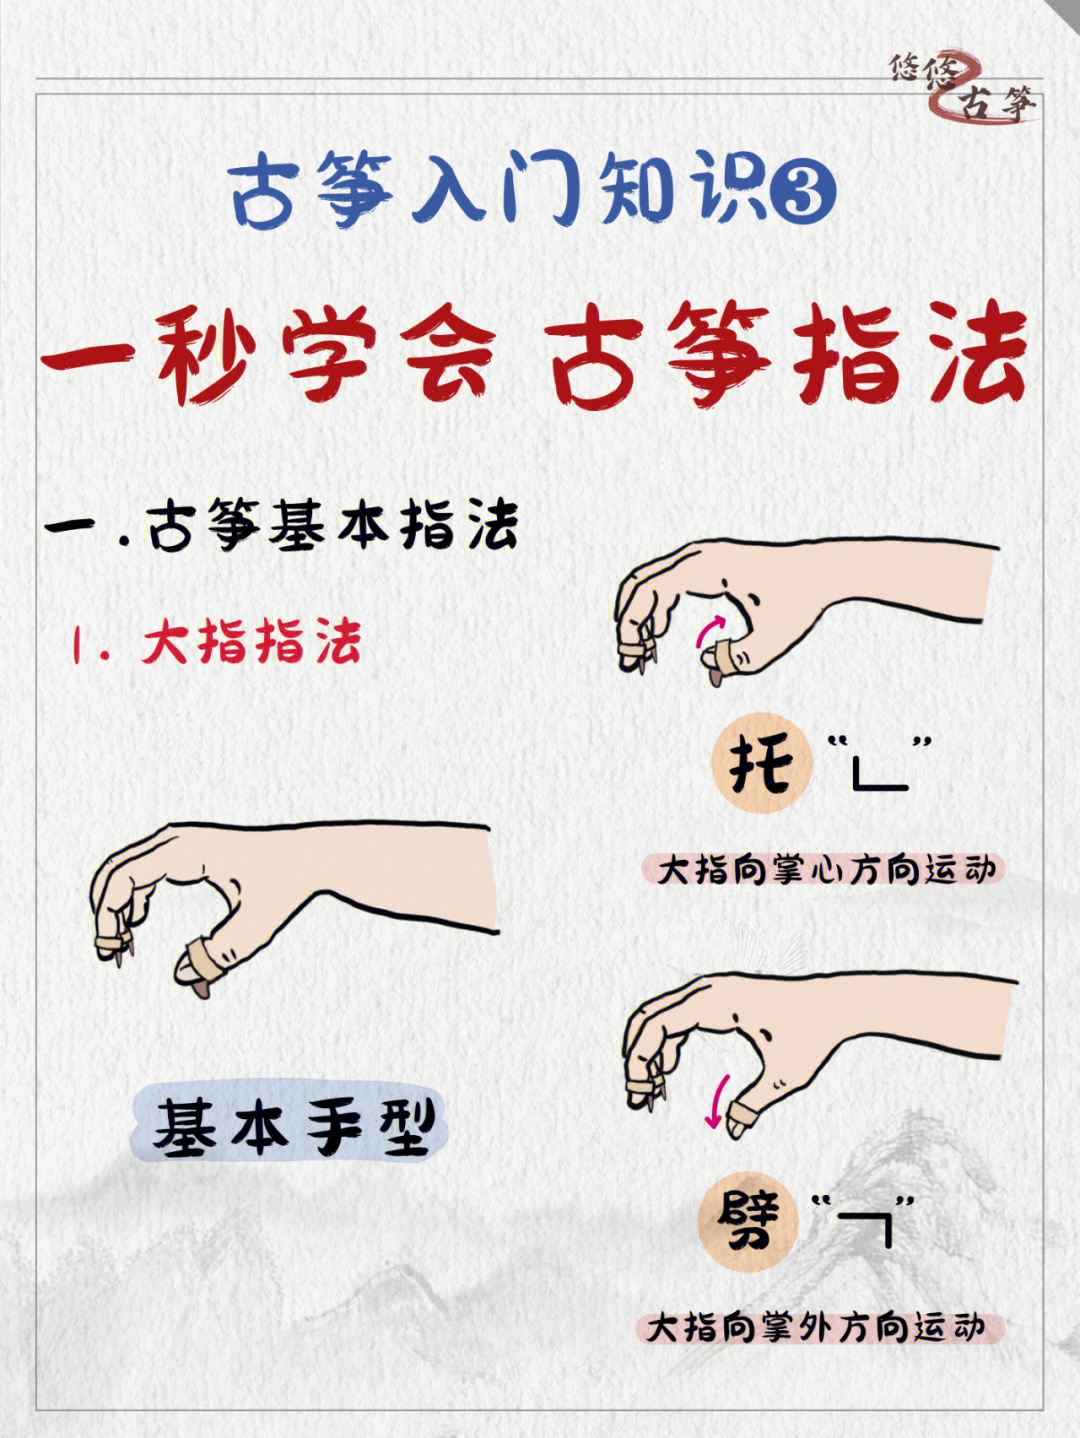 古筝手指对应的指法表图片